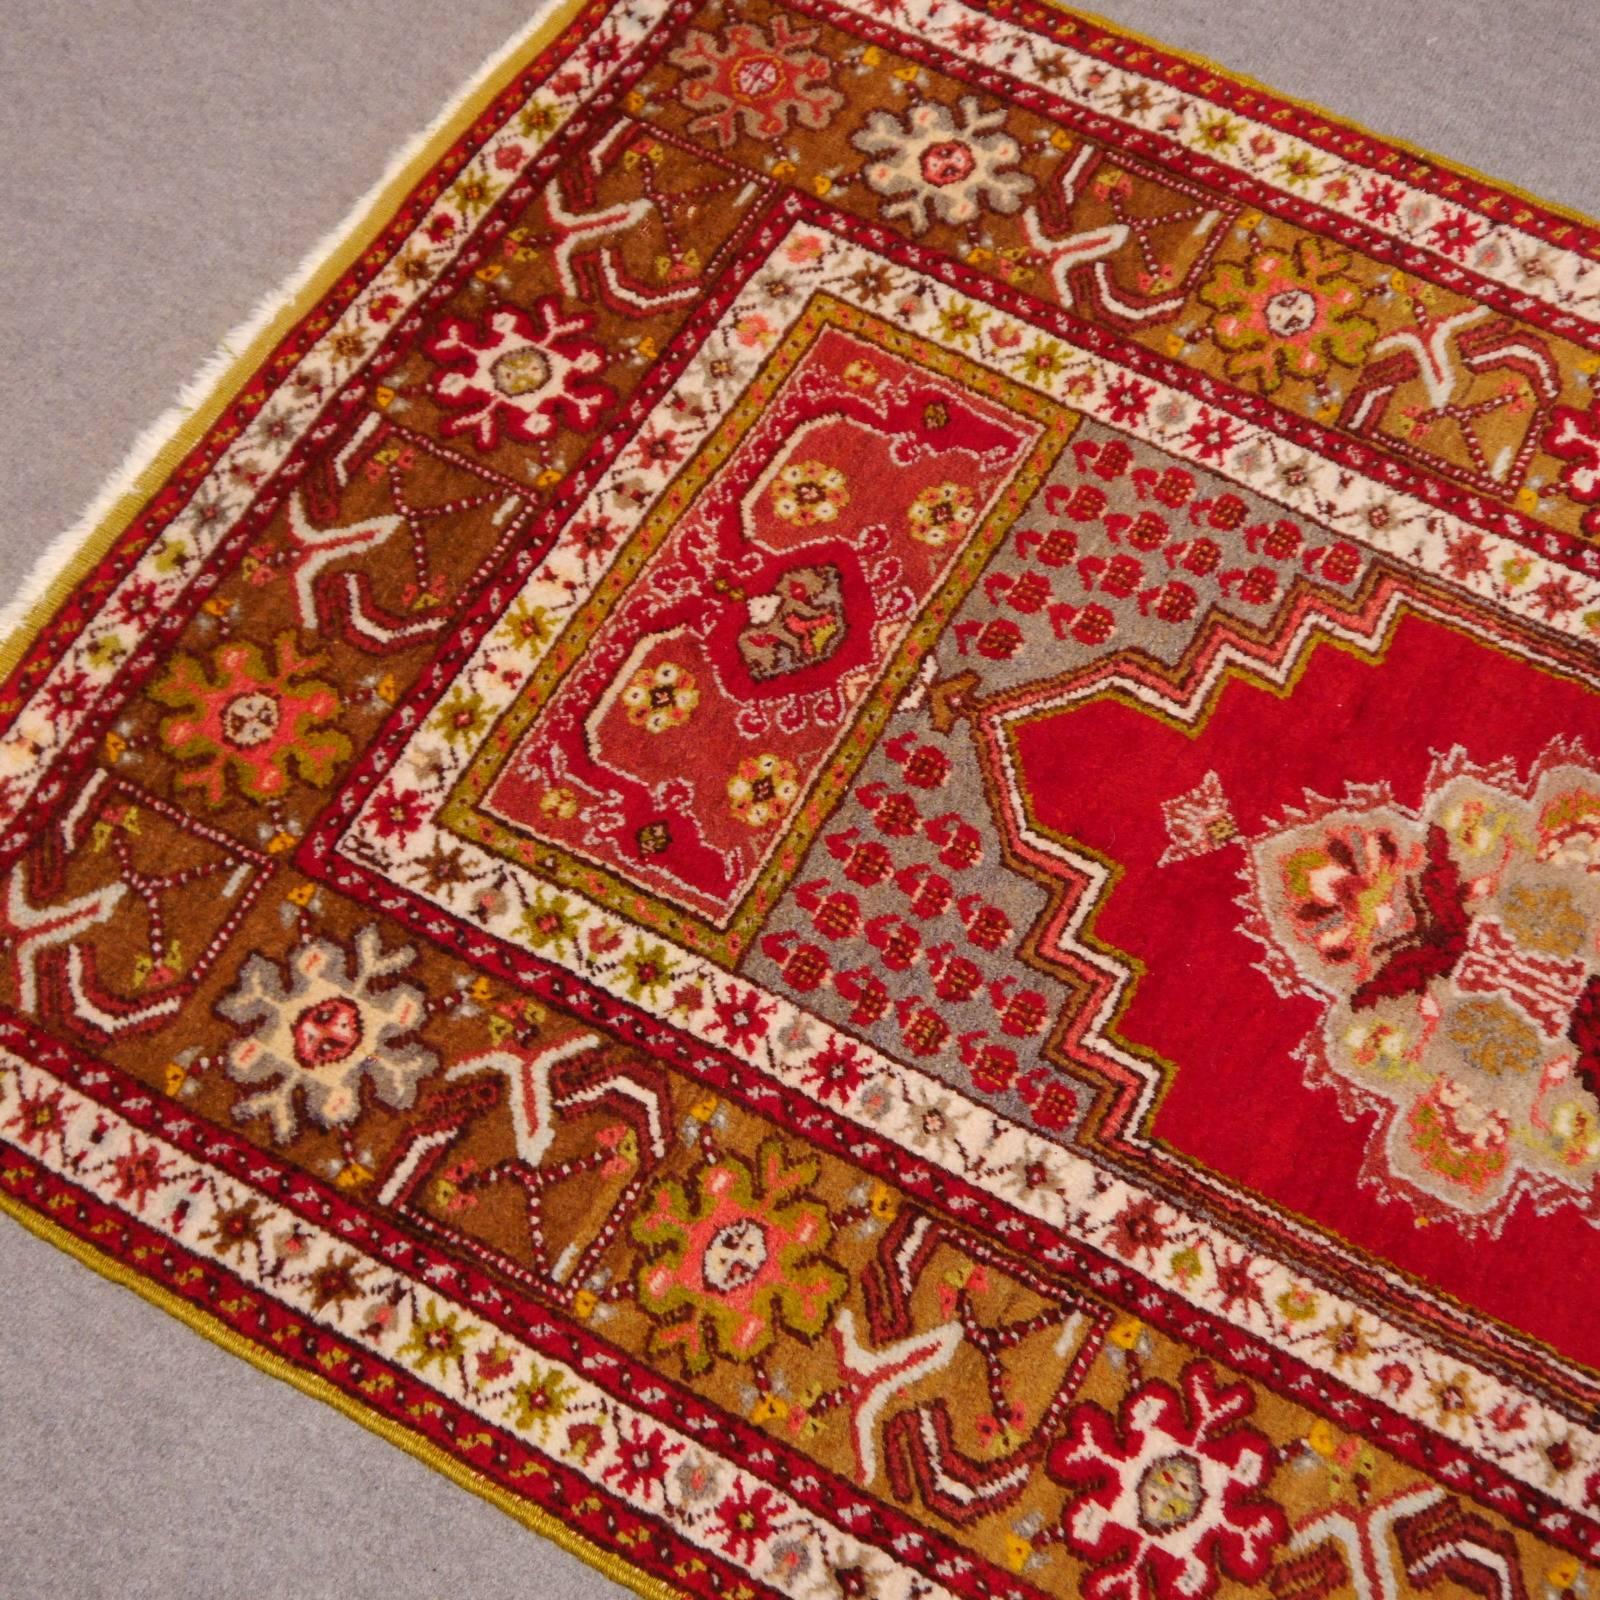 Schöner türkischer Kirsehir-Teppich, vollflorig und in exquisitem Zustand.

Die Djoharian Design Collection hat ihren Sitz in Deutschland, alle unsere Teppiche werden von dort verschickt. Wir sind lizenzierter FAIR-TRADE Partner von LABEL STEP FAIR